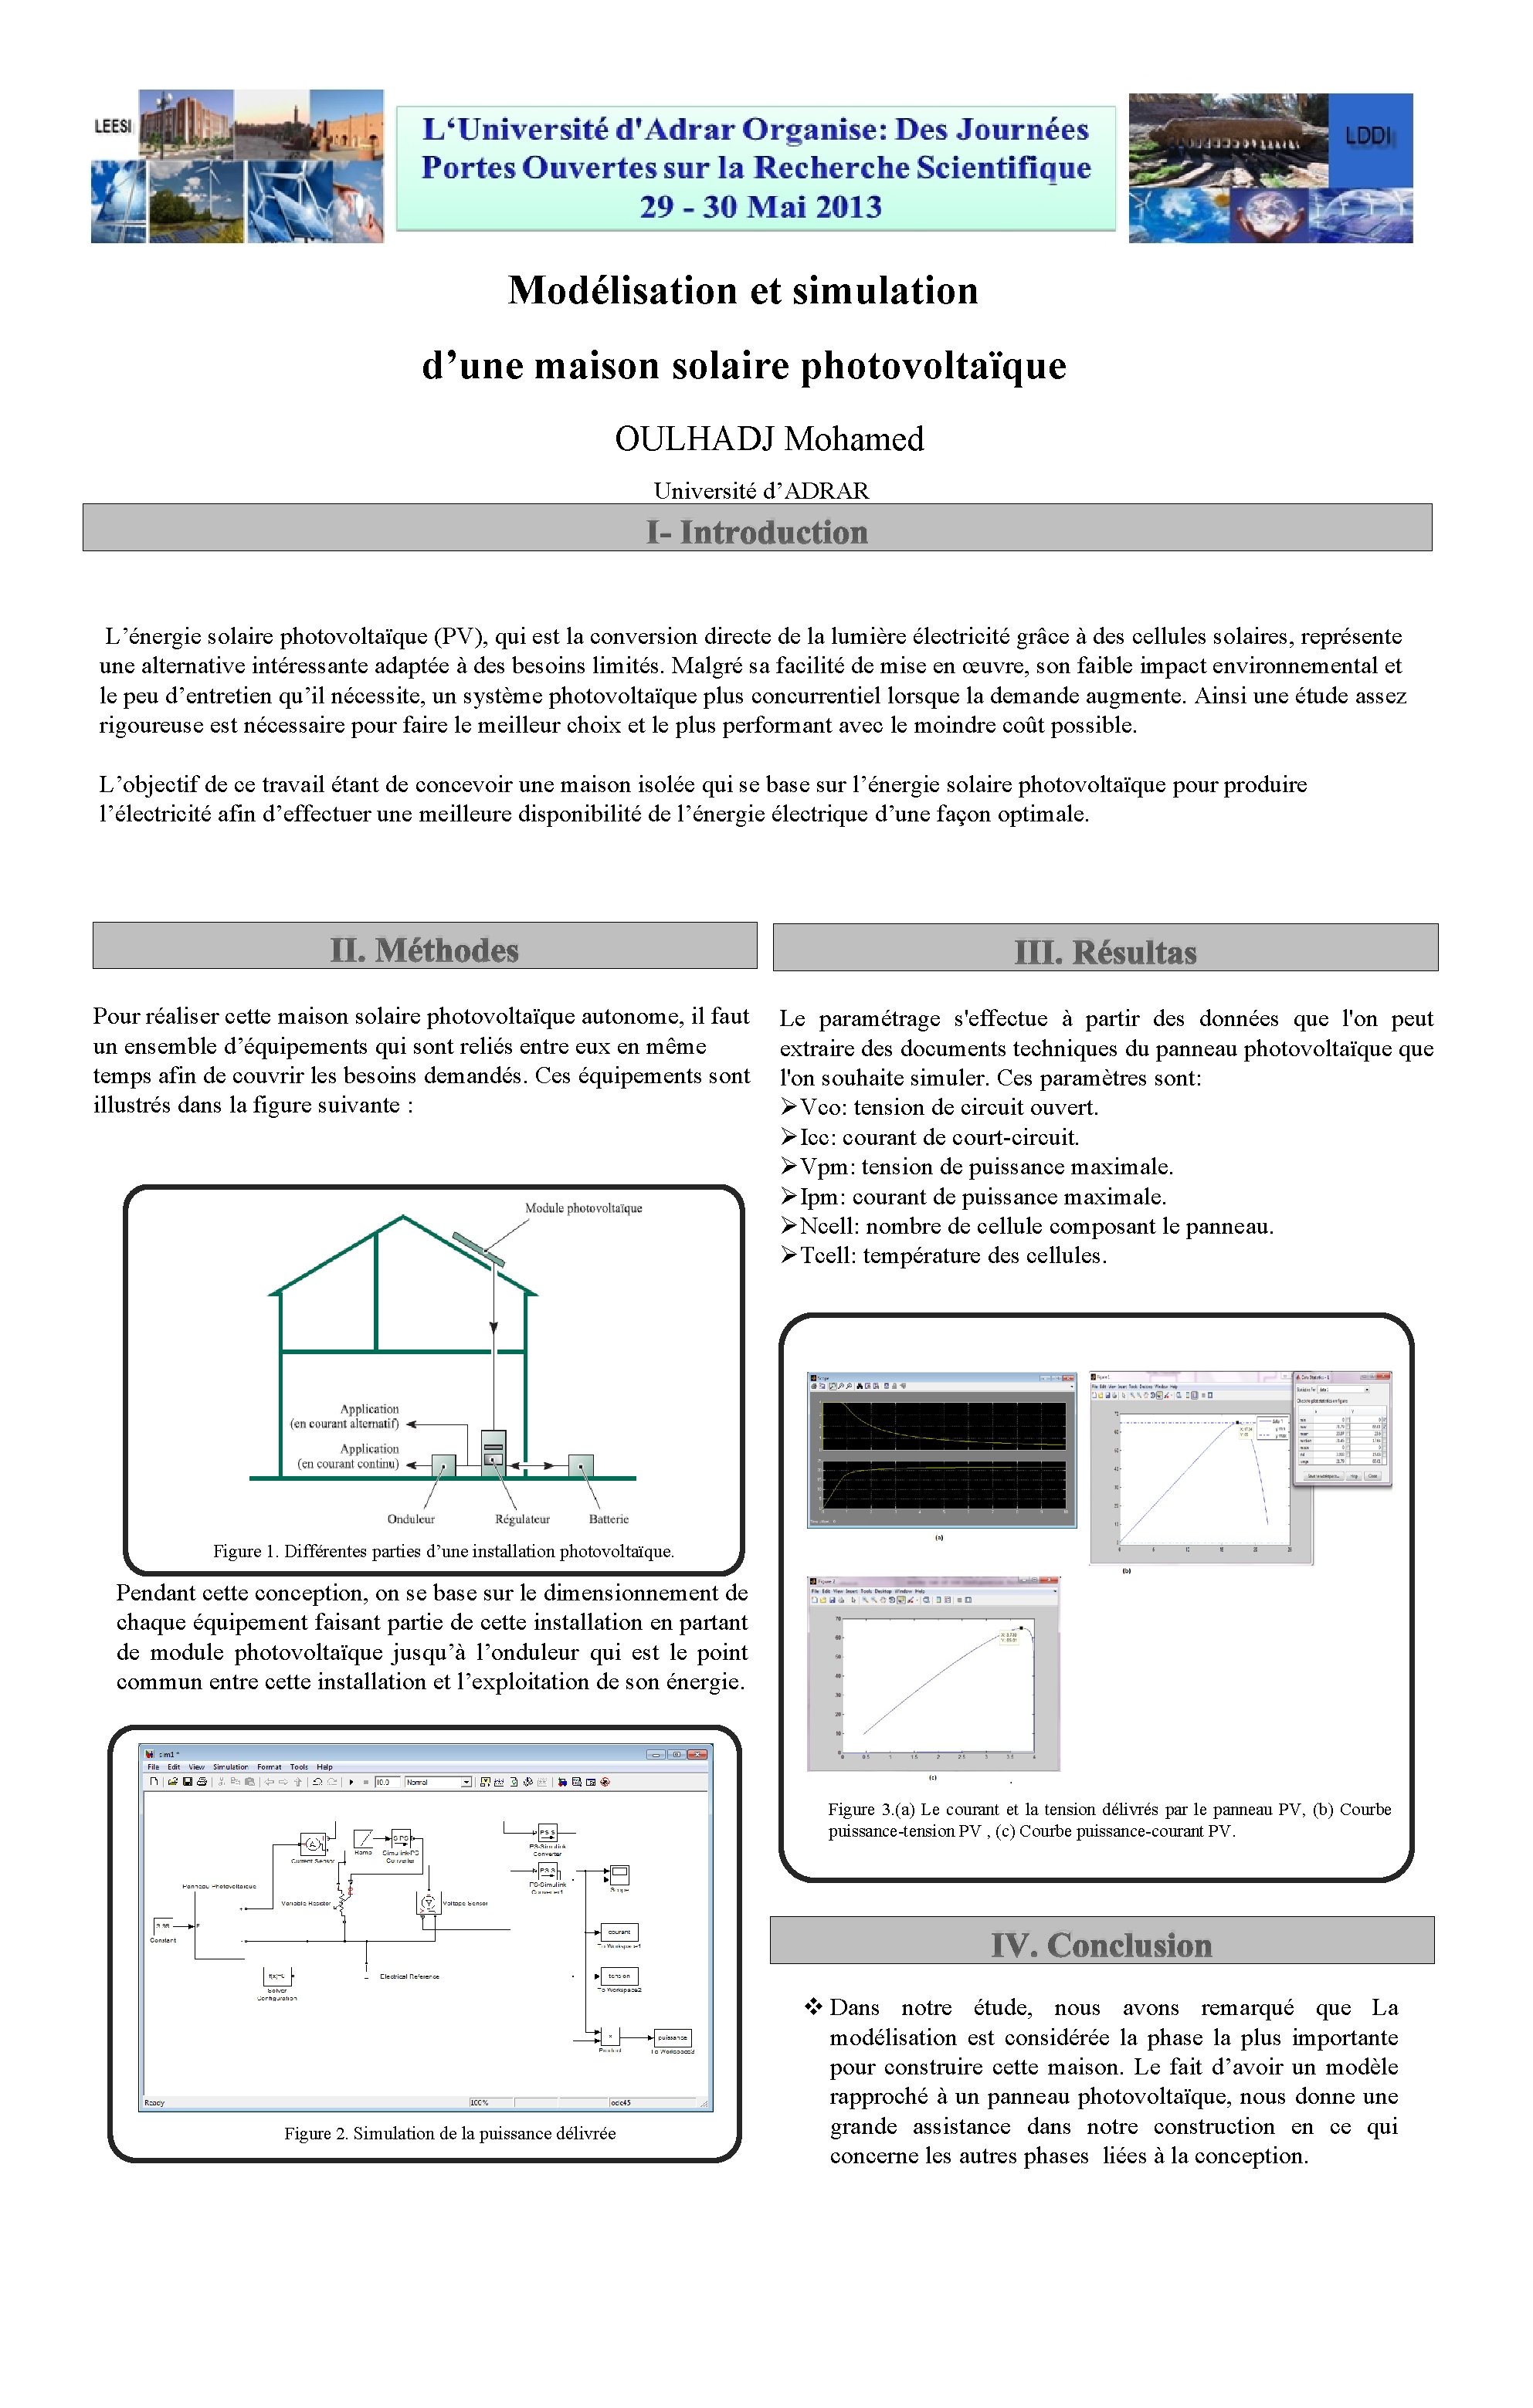 Modélisation et simulation d’une maison solaire photovoltaïque OULHADJ Mohamed Université d’ADRAR I- Introduction L’énergie